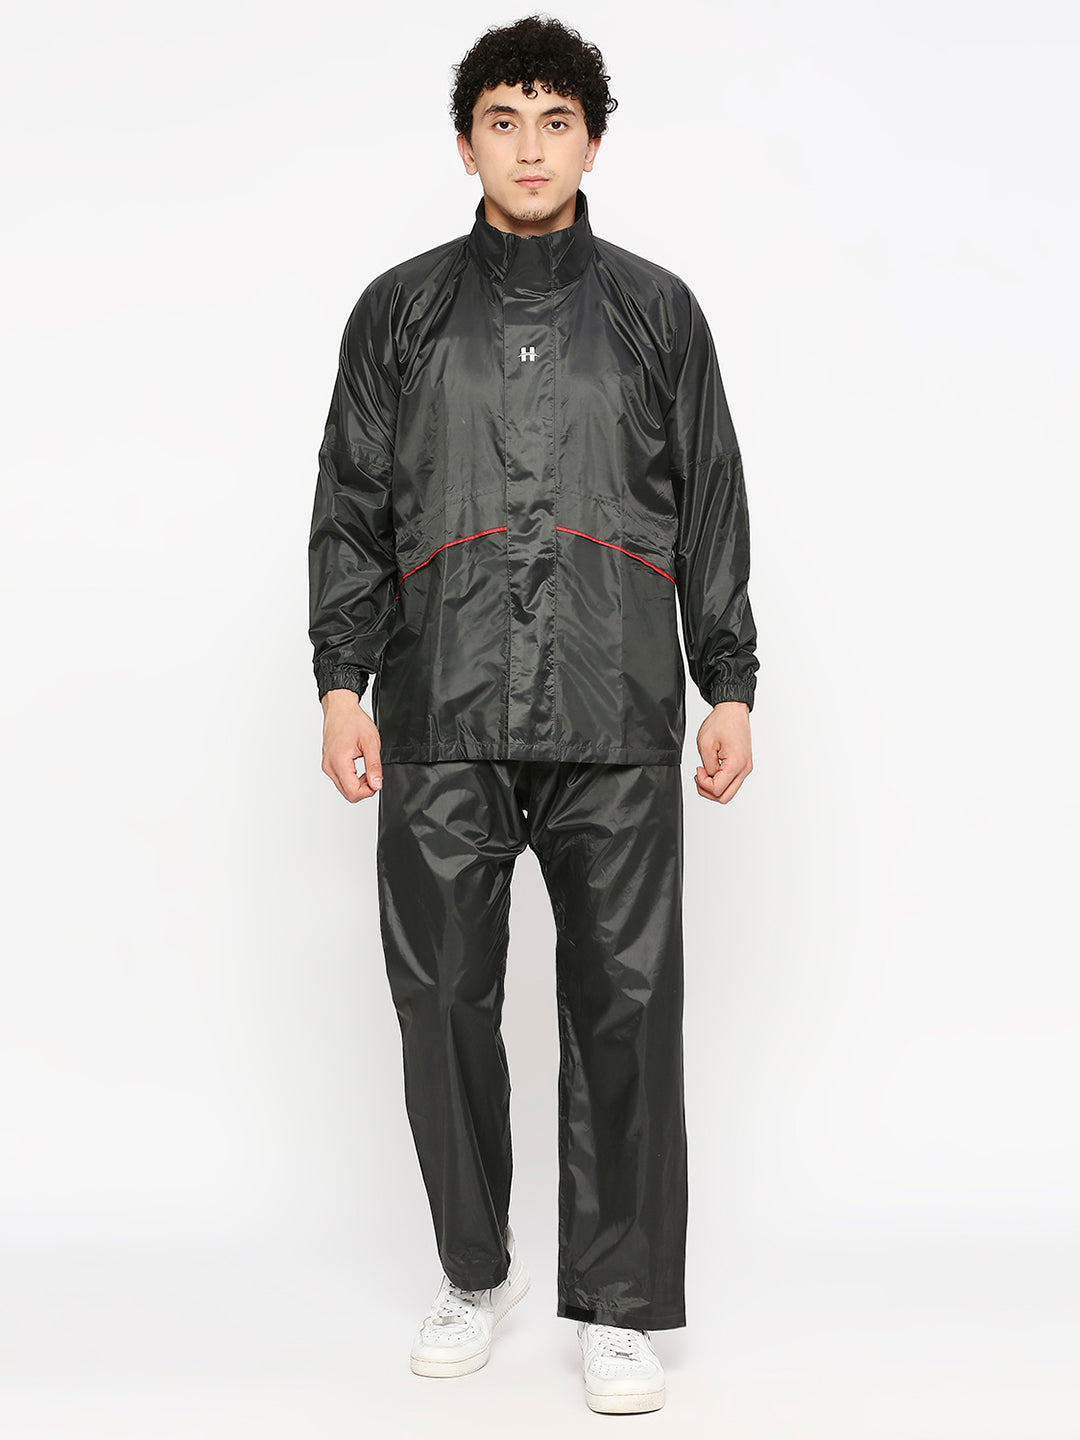 Highlands Commando Waterproof Rain Suit